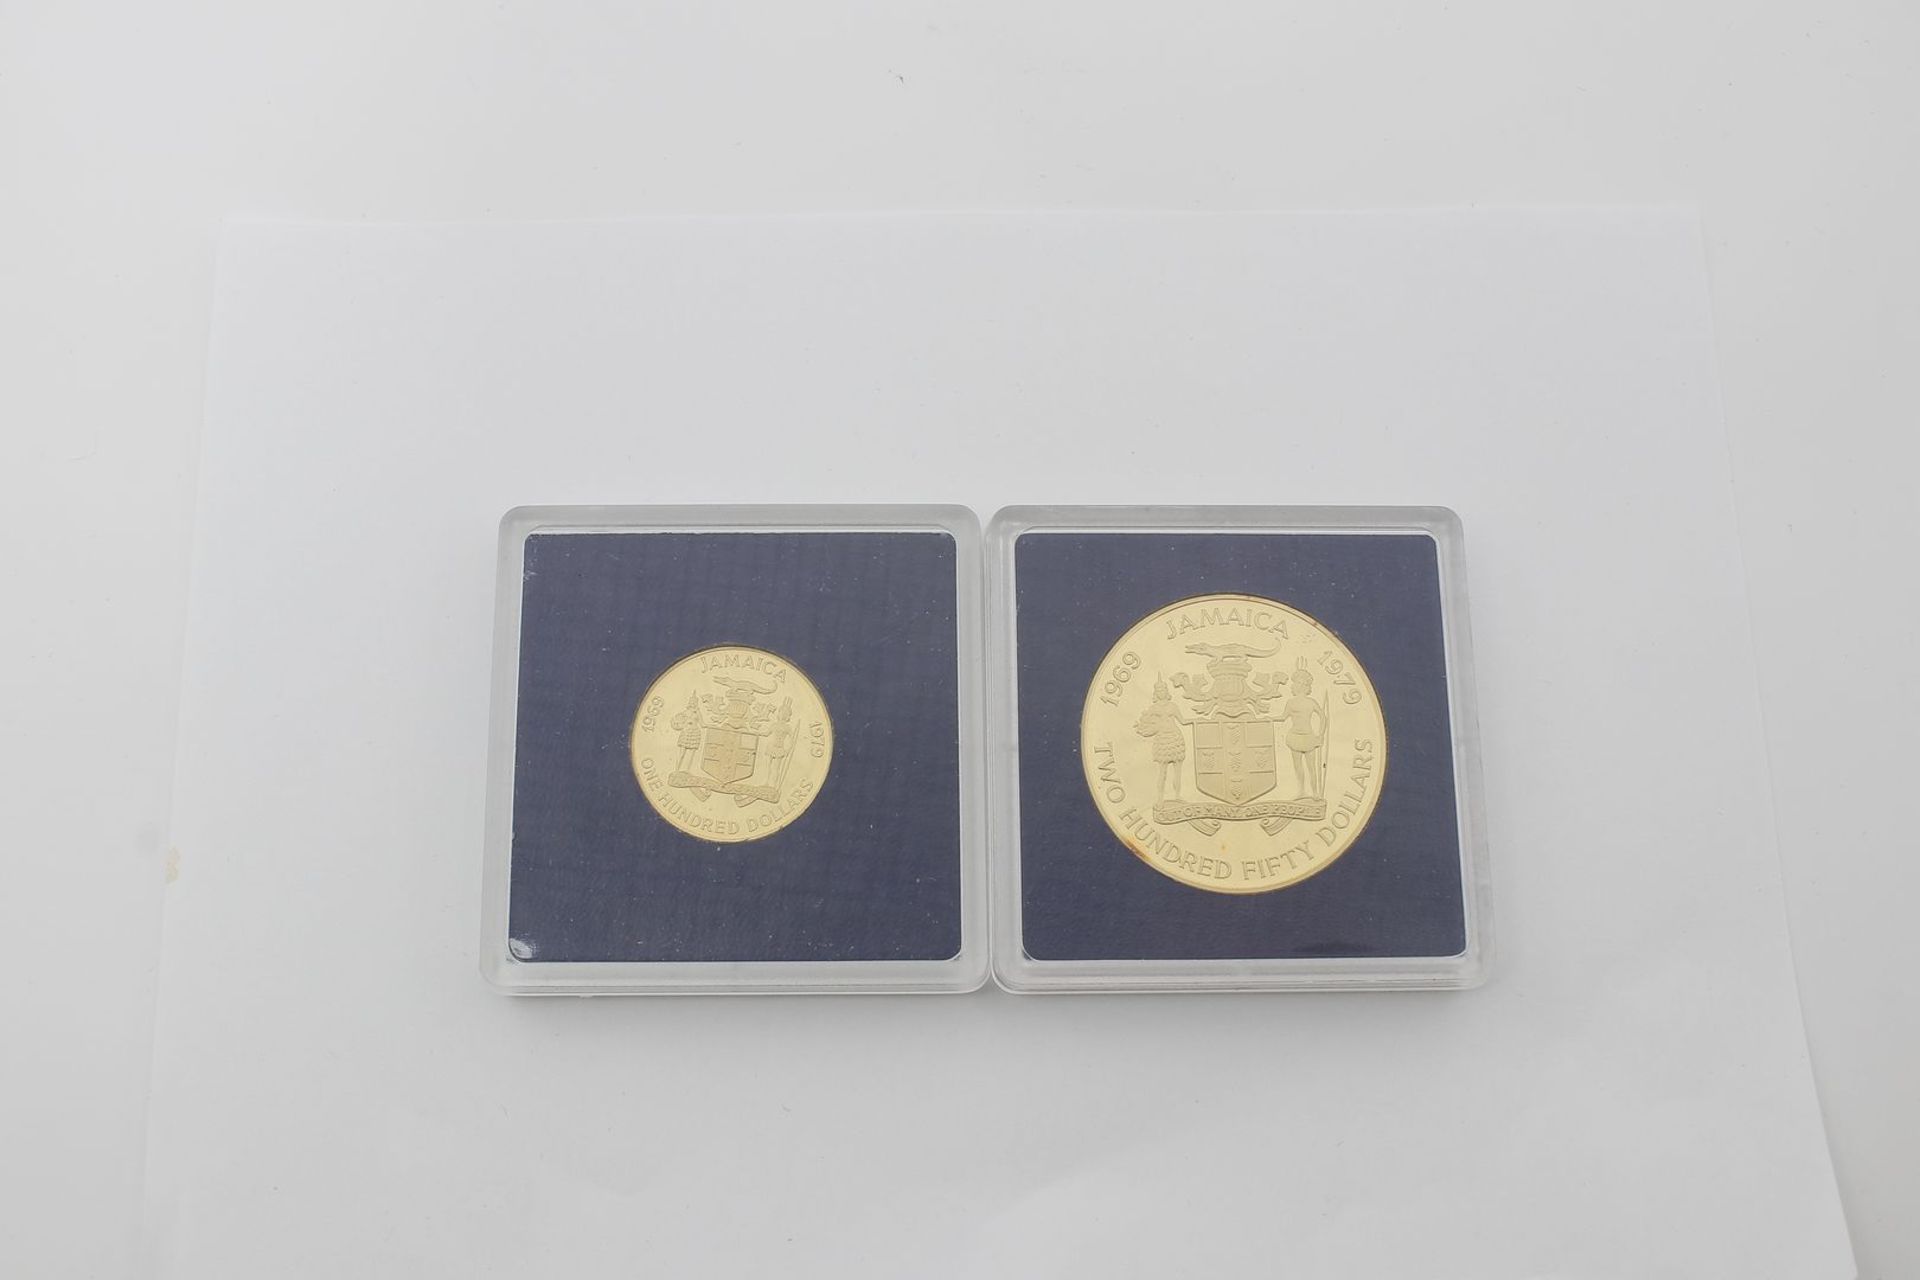 Jamaica, 250 und 100 $, 1979. - Bild 2 aus 3